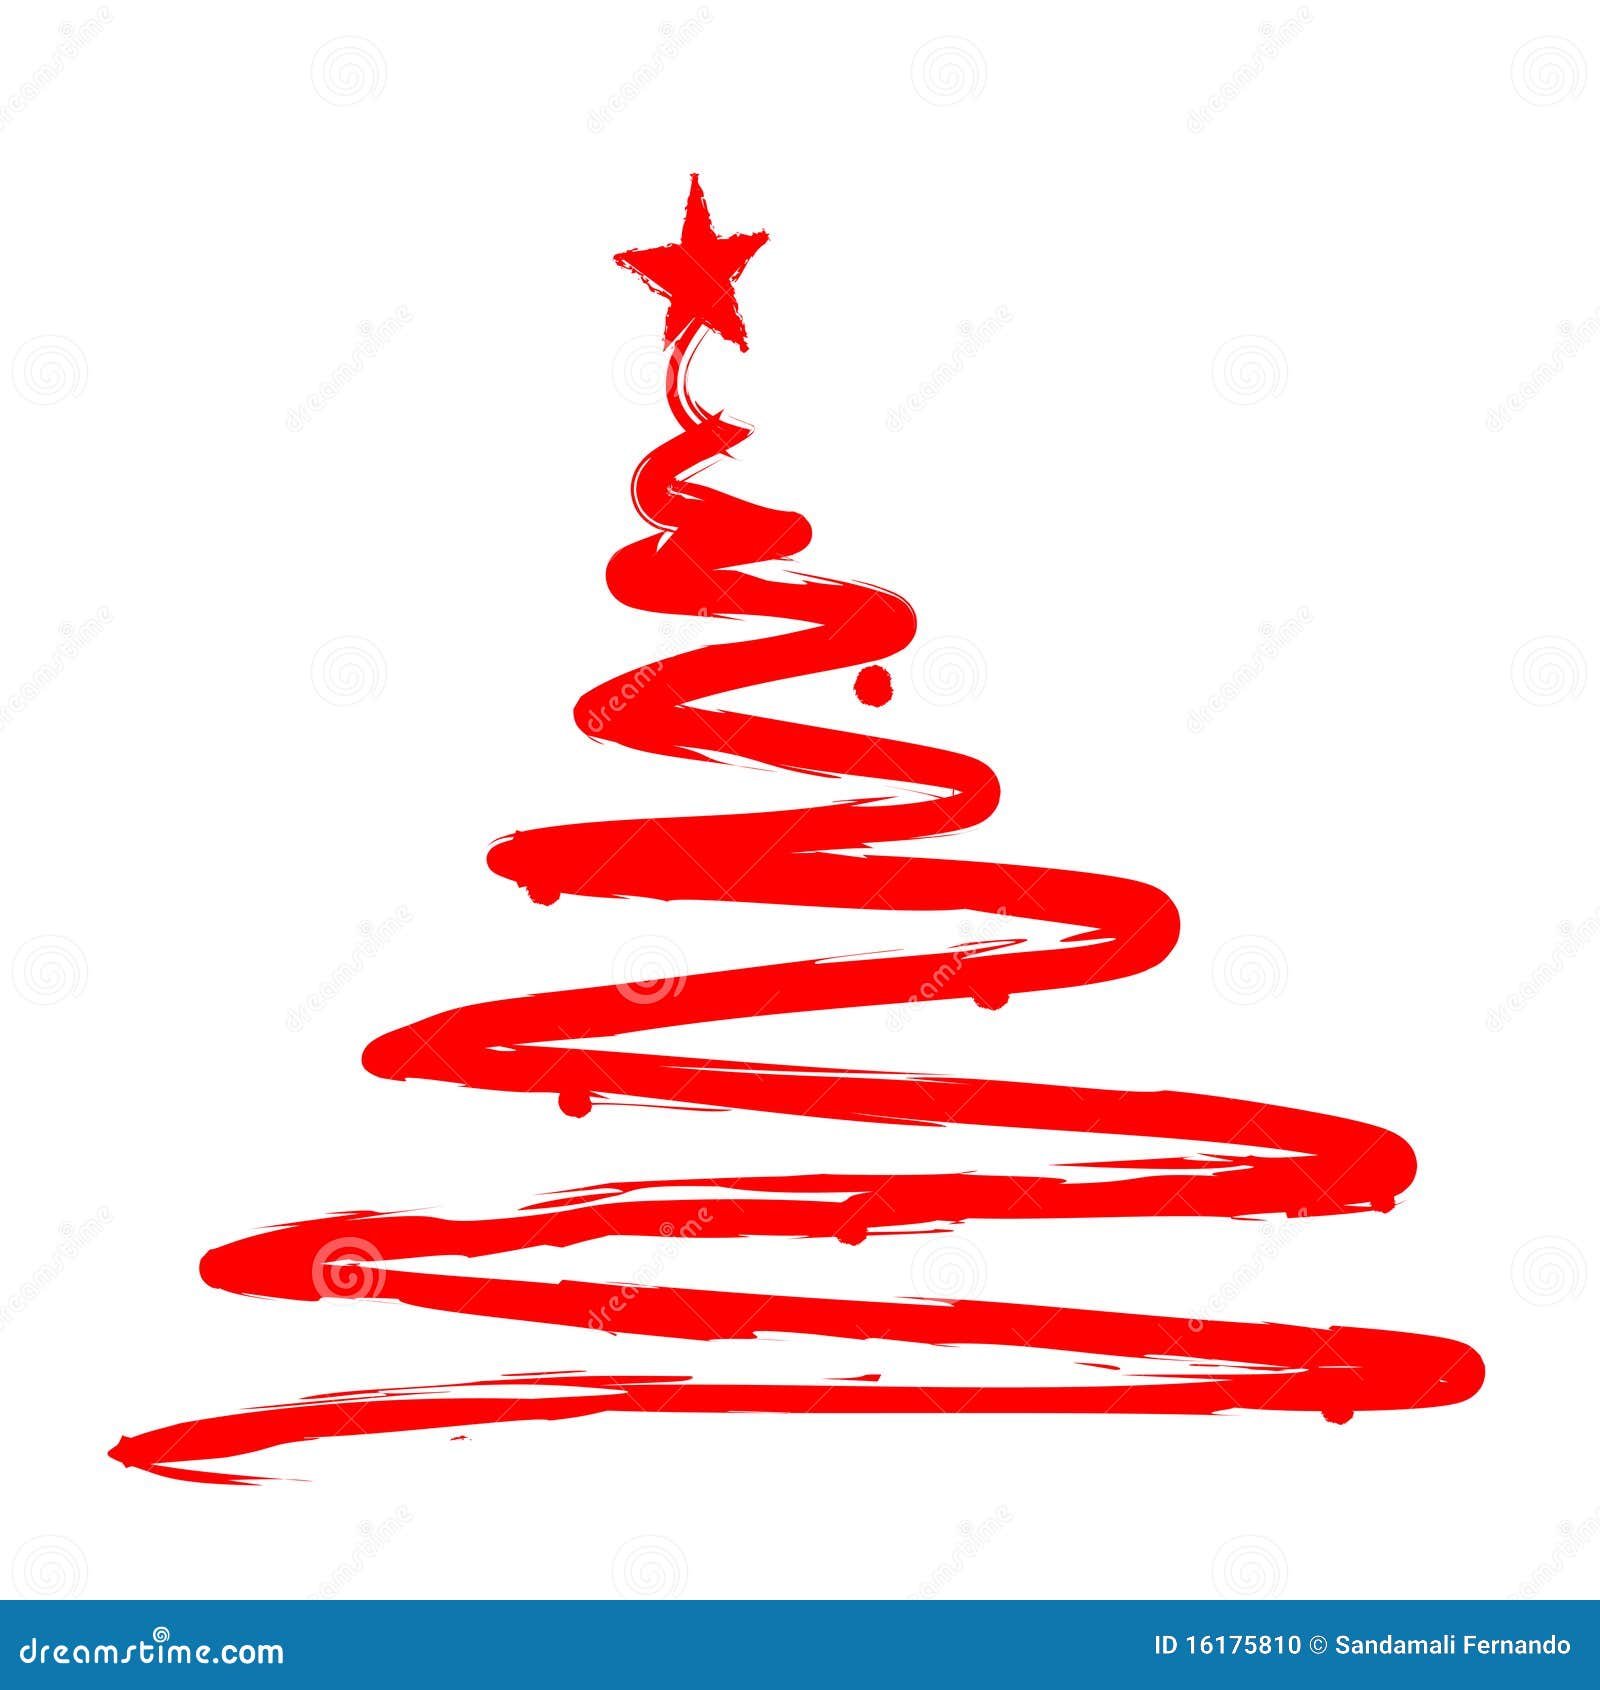 painted-christmas-tree-illustration-16175810.jpg (1300×1390)